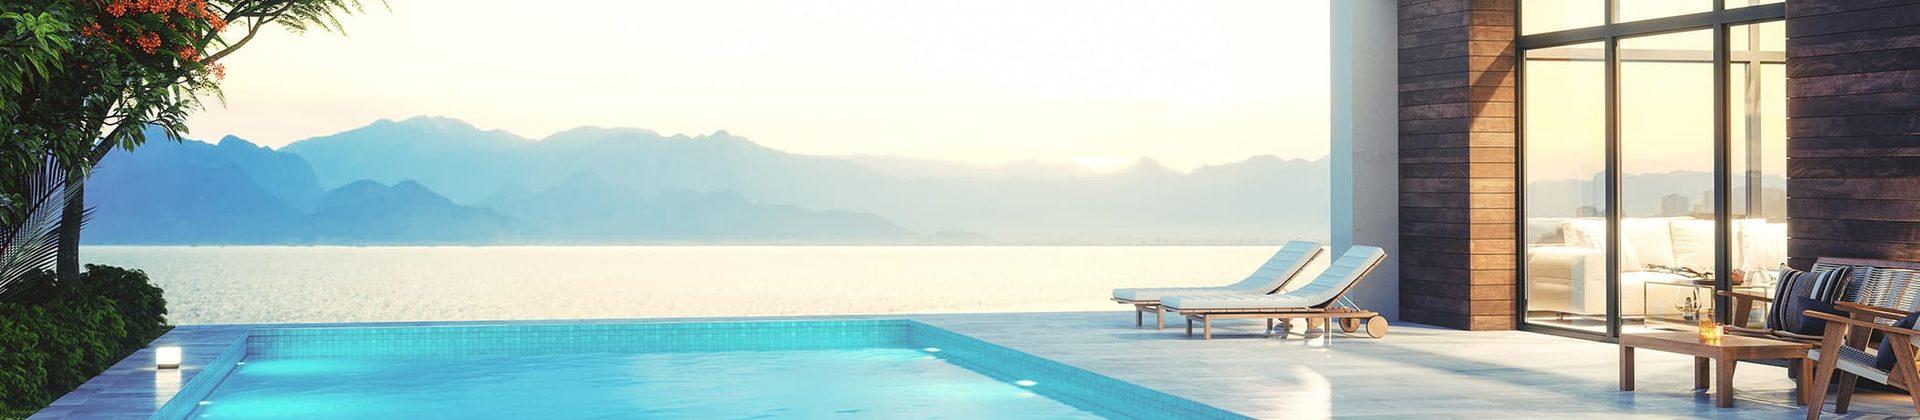 Ferienhaus mit Pool an der Kvarner Bucht - TUI